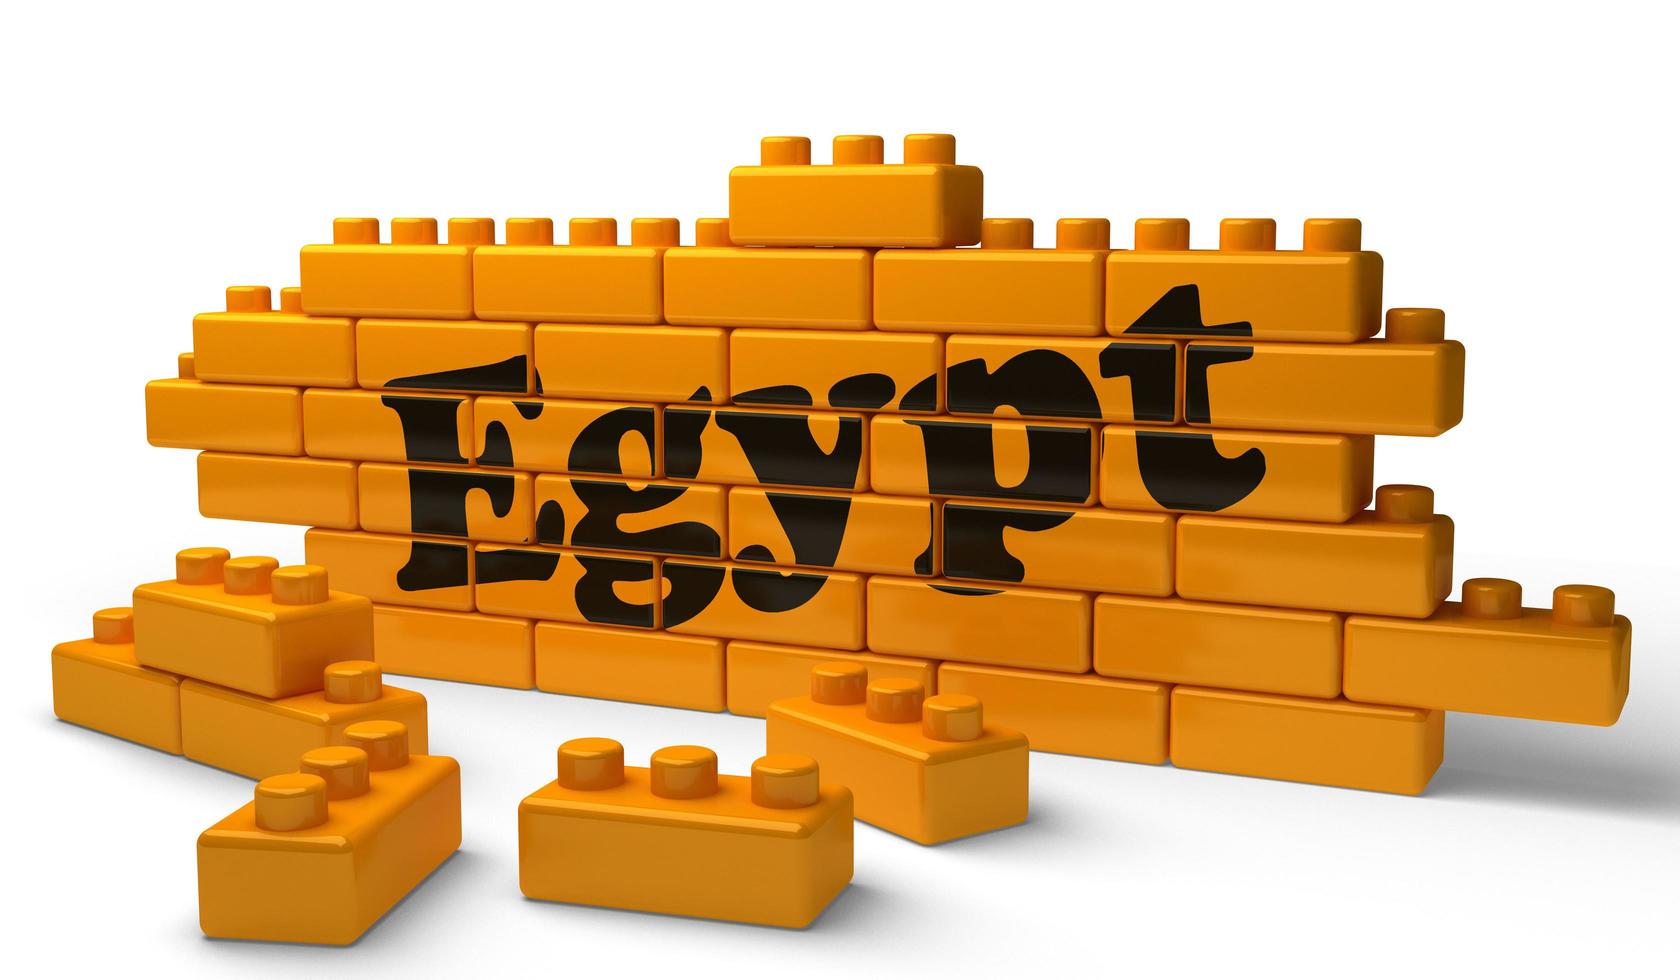 ägypten-wort auf gelber backsteinmauer foto